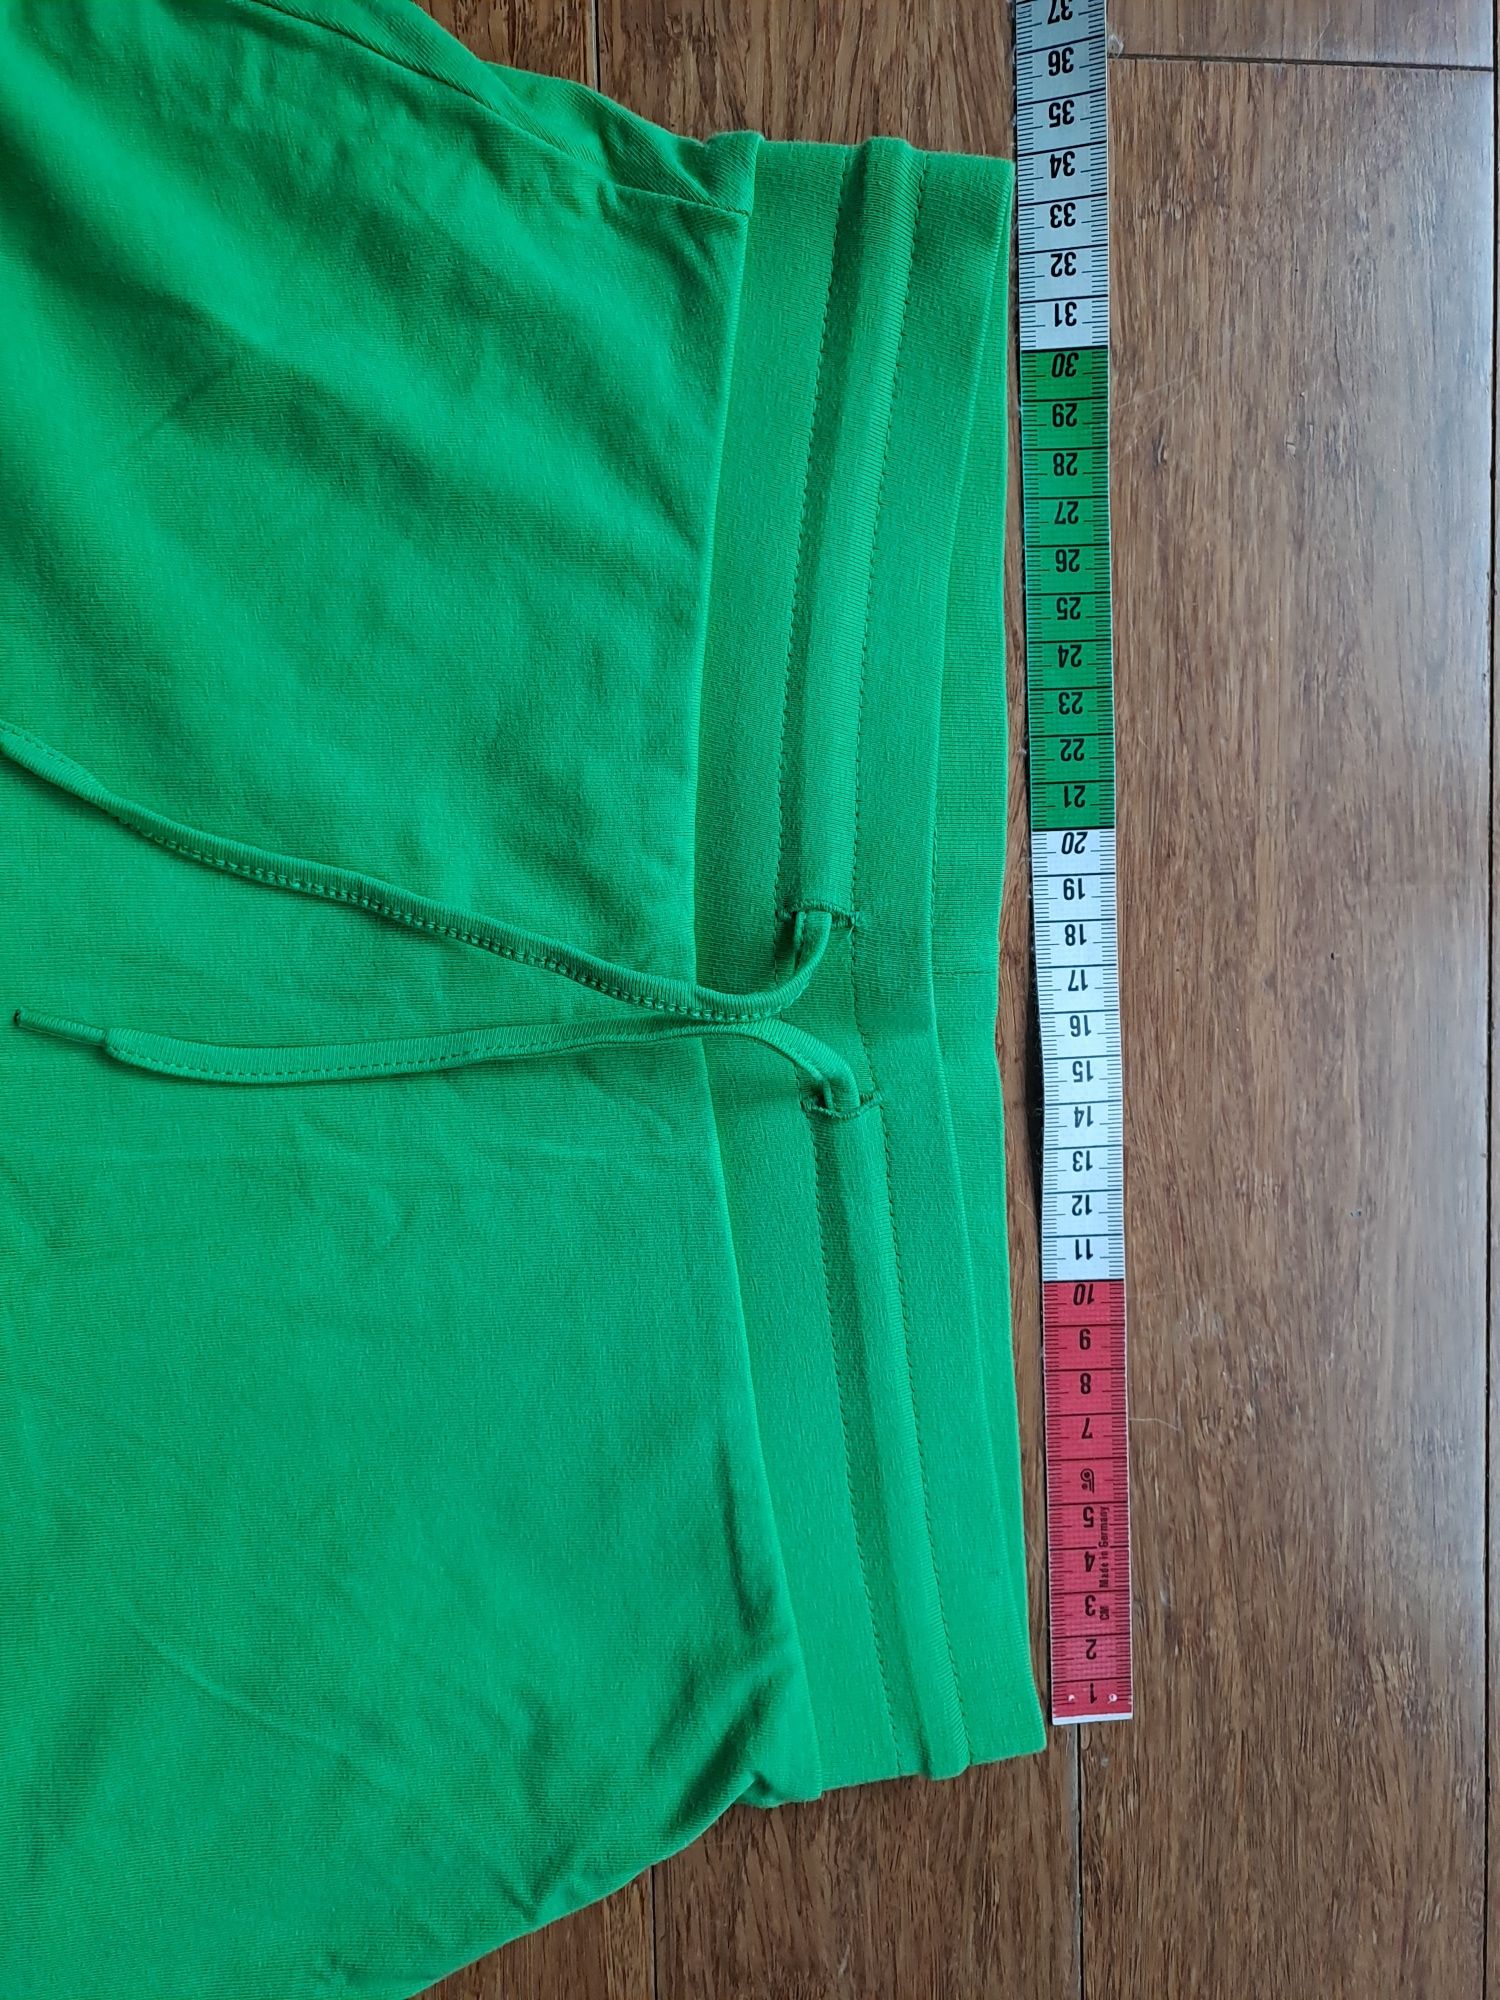 Spódnico-spodnie XS, zielone, nowe